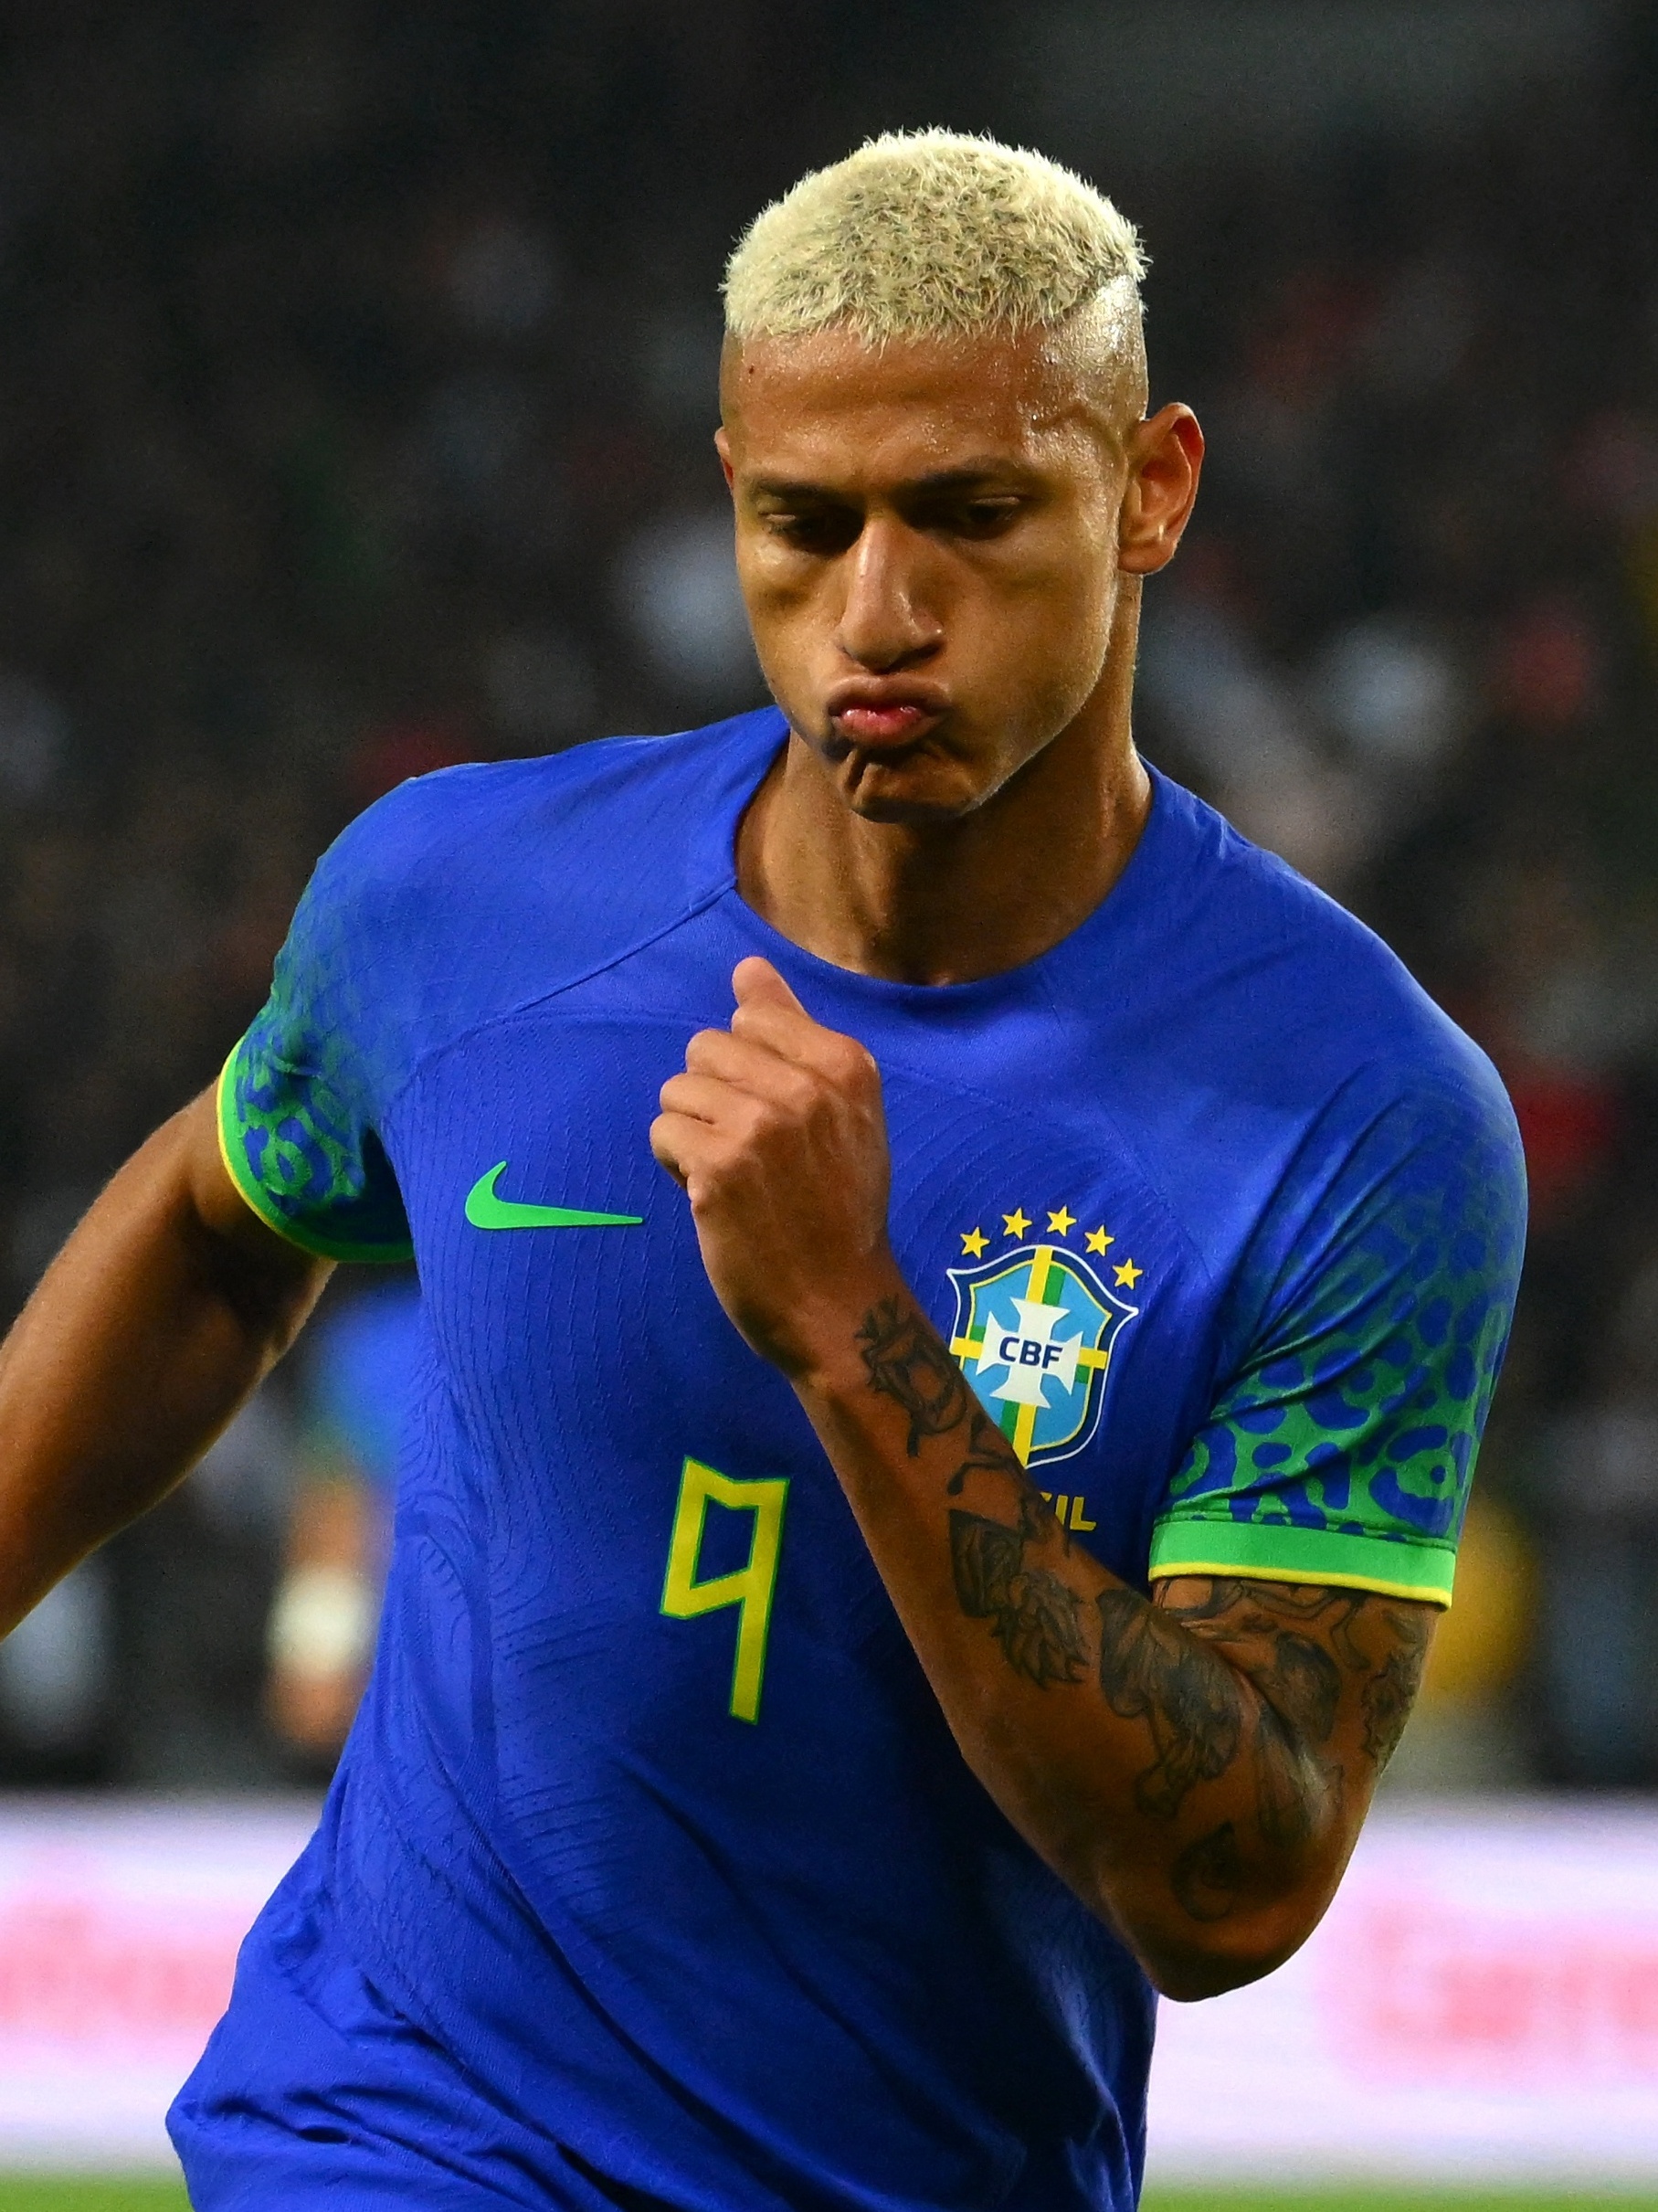 Quando é o próximo jogo da seleção brasileira?